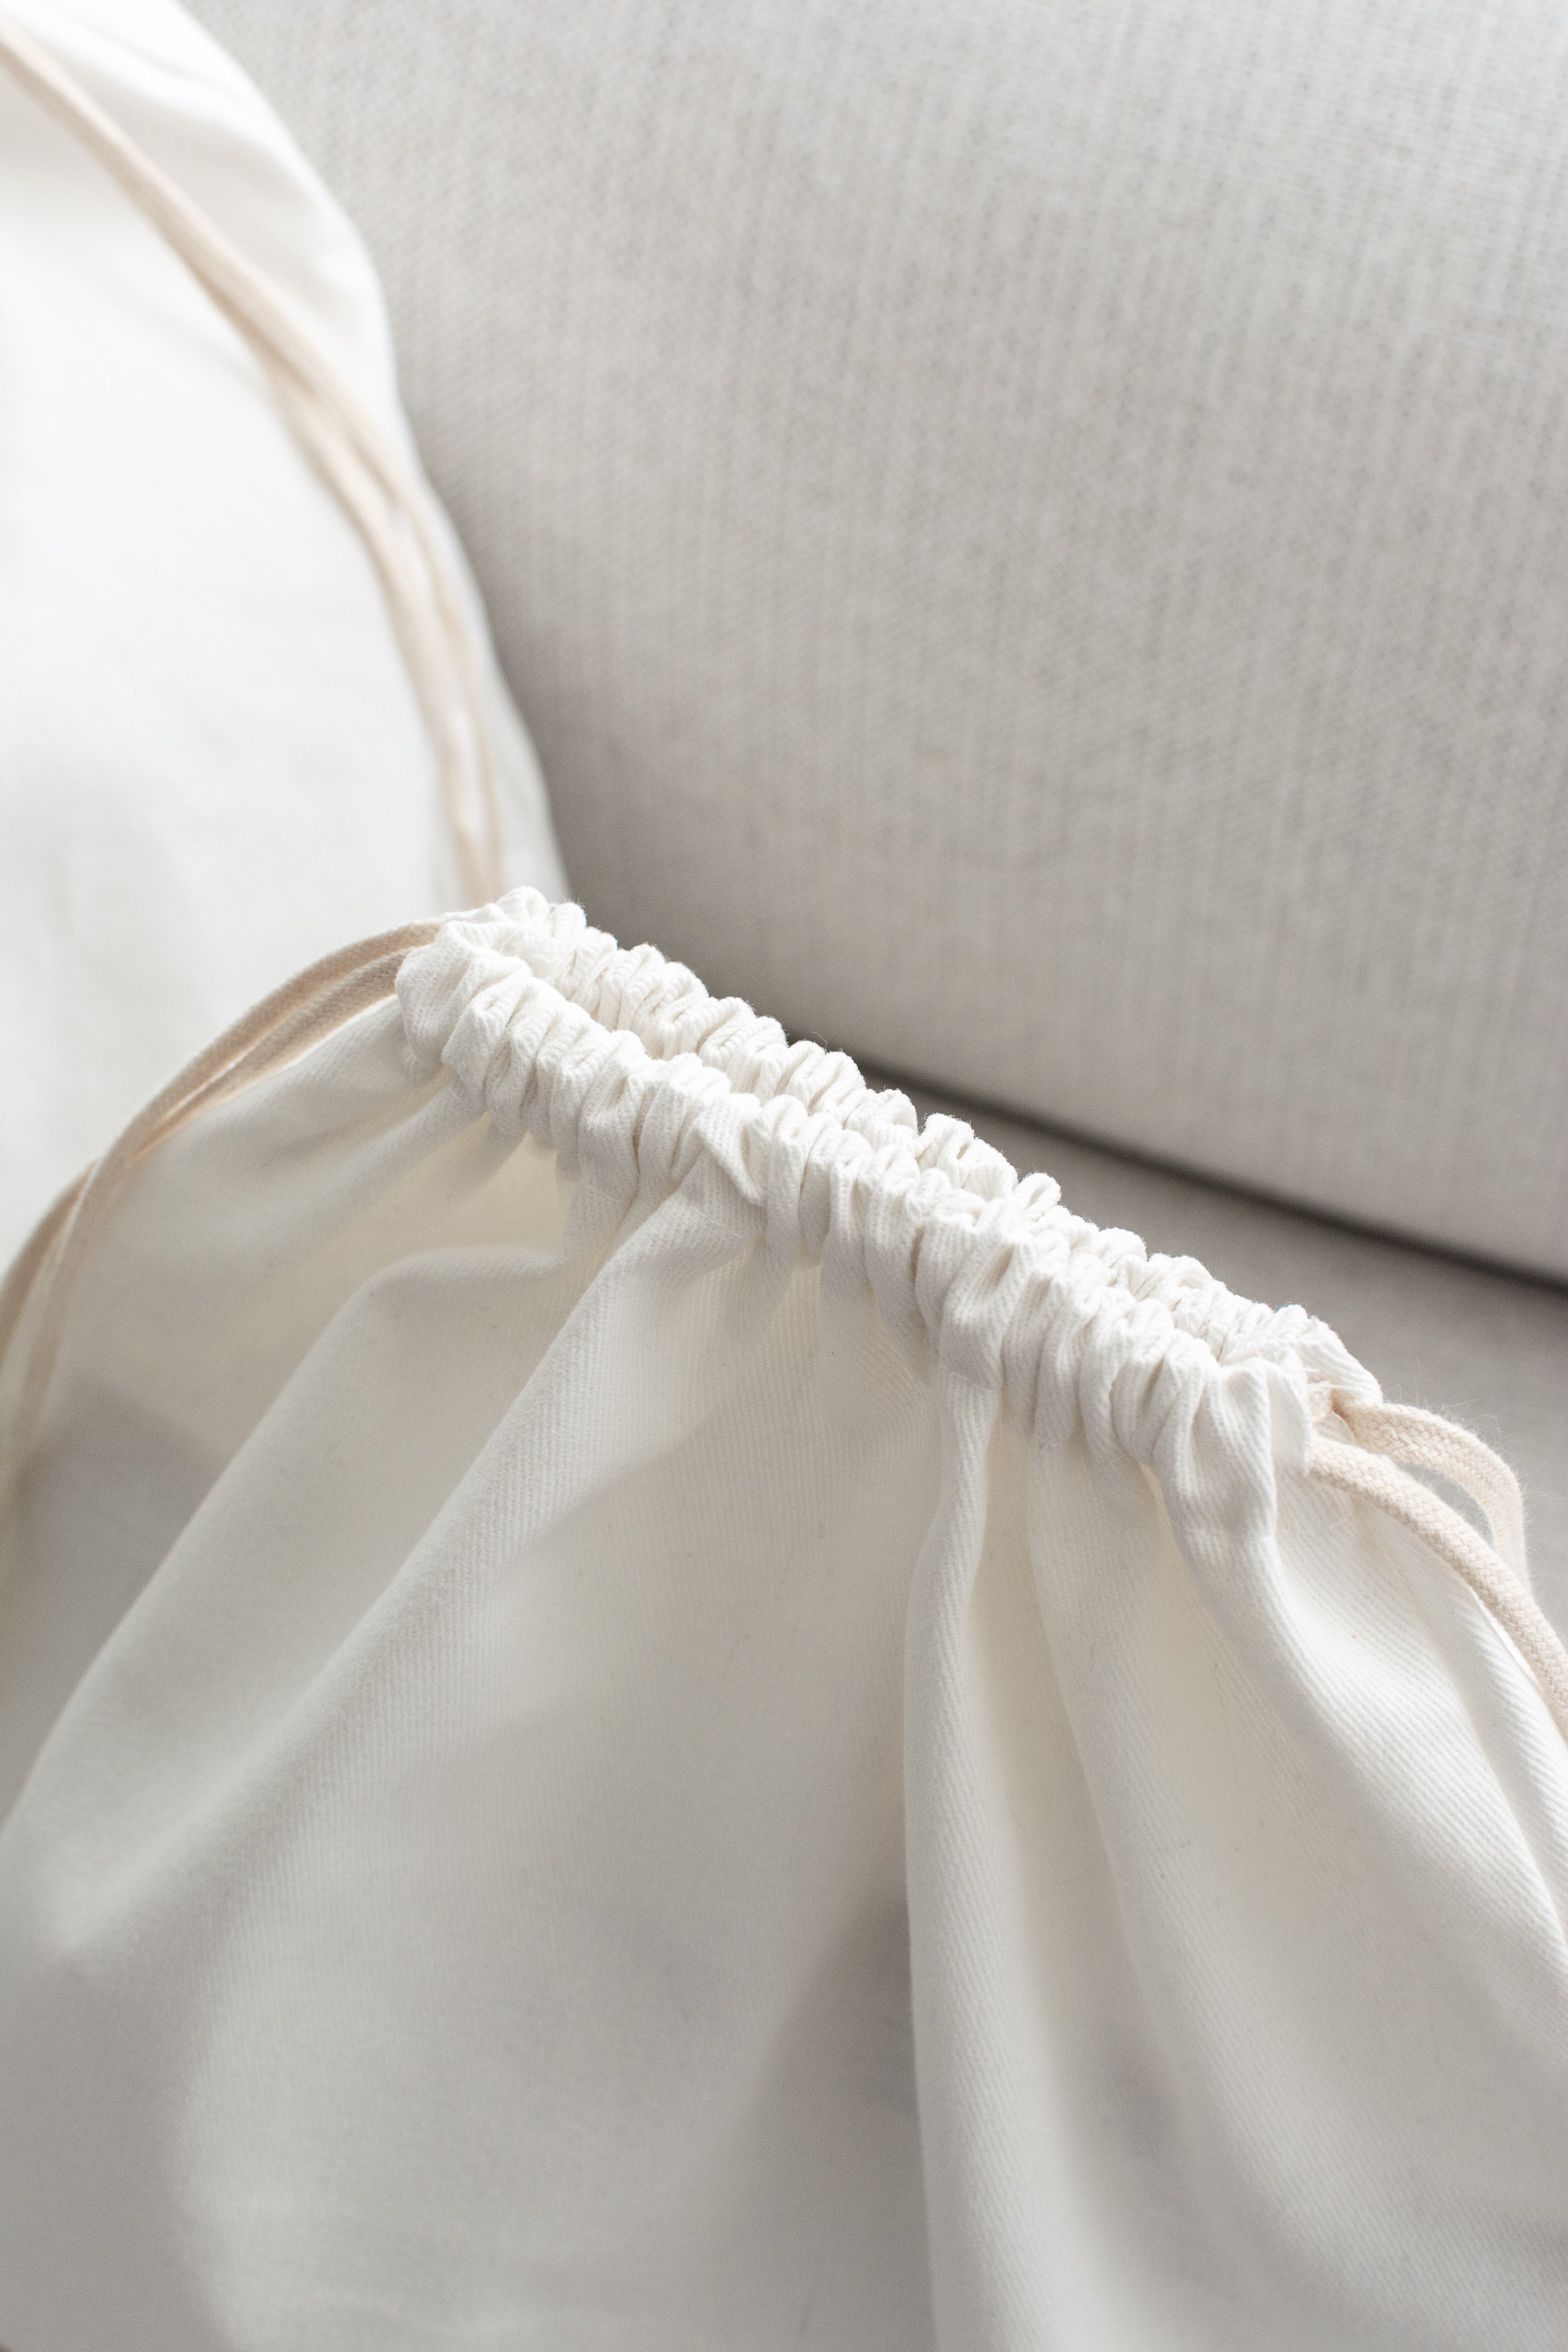 Cotton Drawstring Bags | Set of 2